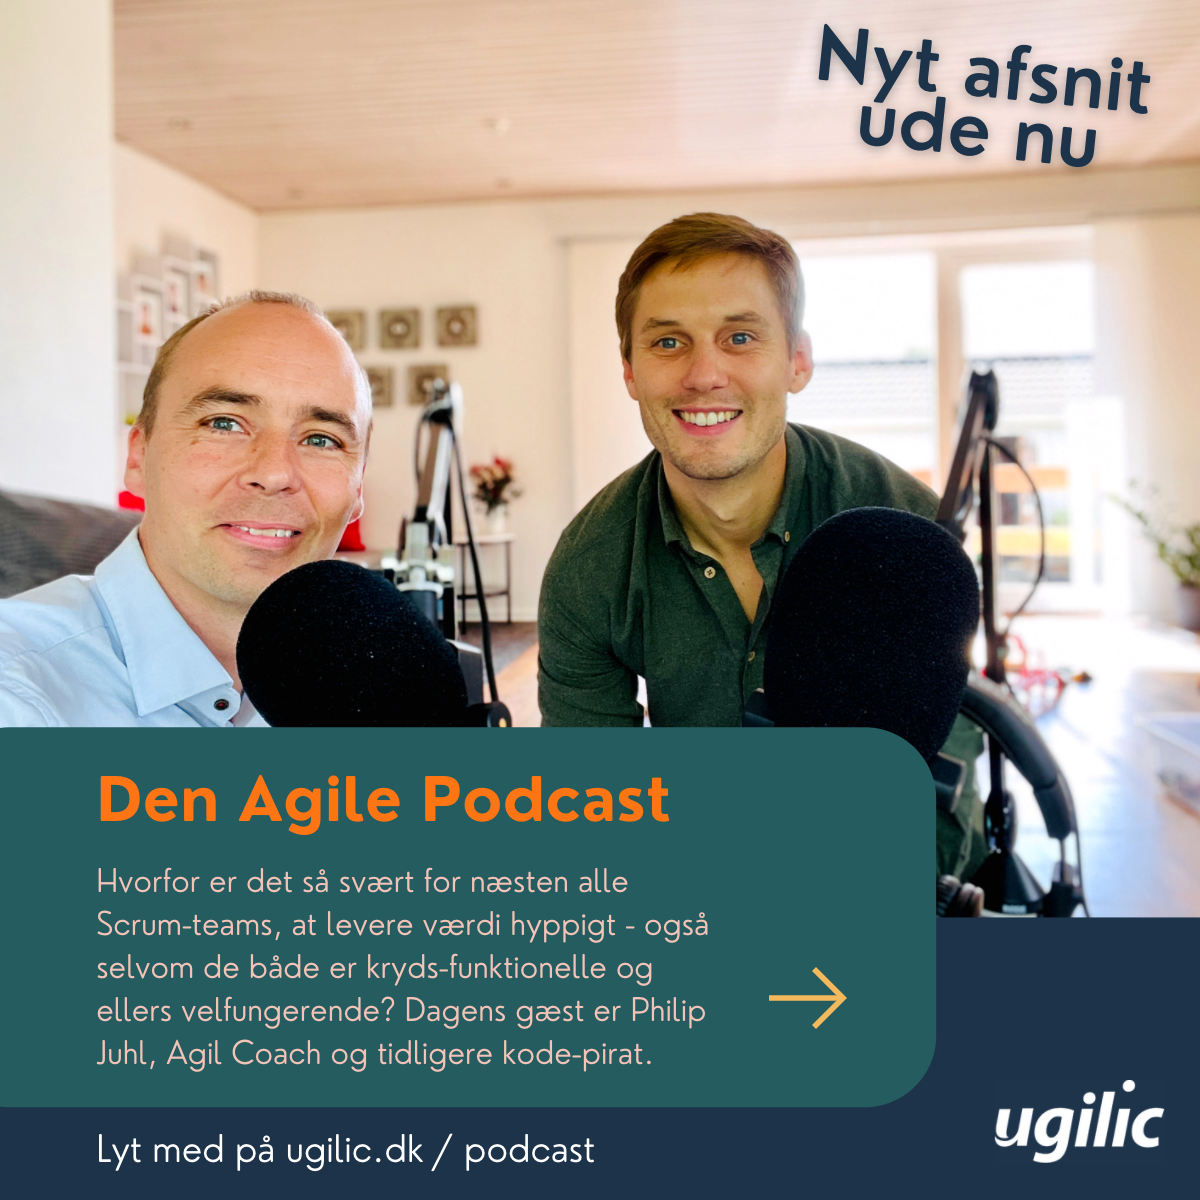 Lyt til den Agile Podcast. Scrum teams